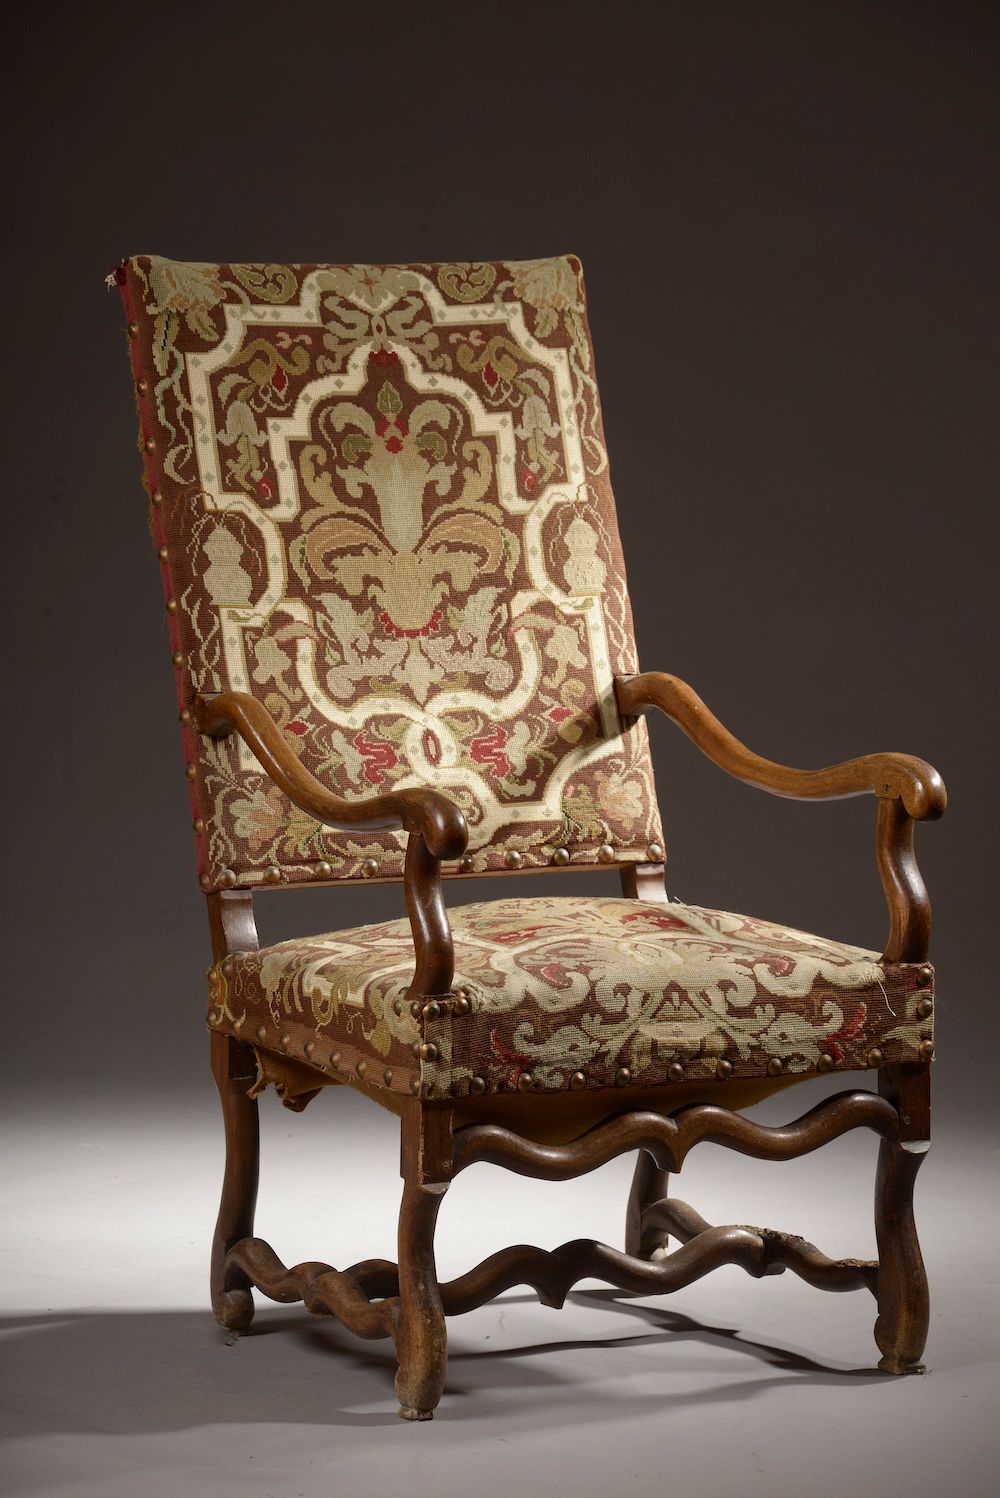 Null 雕刻的木质扶手椅，有一个平坦的靠背和一个 "羊骨 "底座，由一个支杆连接（缺失和磨损）。路易十四时期。

19世纪的小圆点软垫。

高度：113厘米1&hellip;